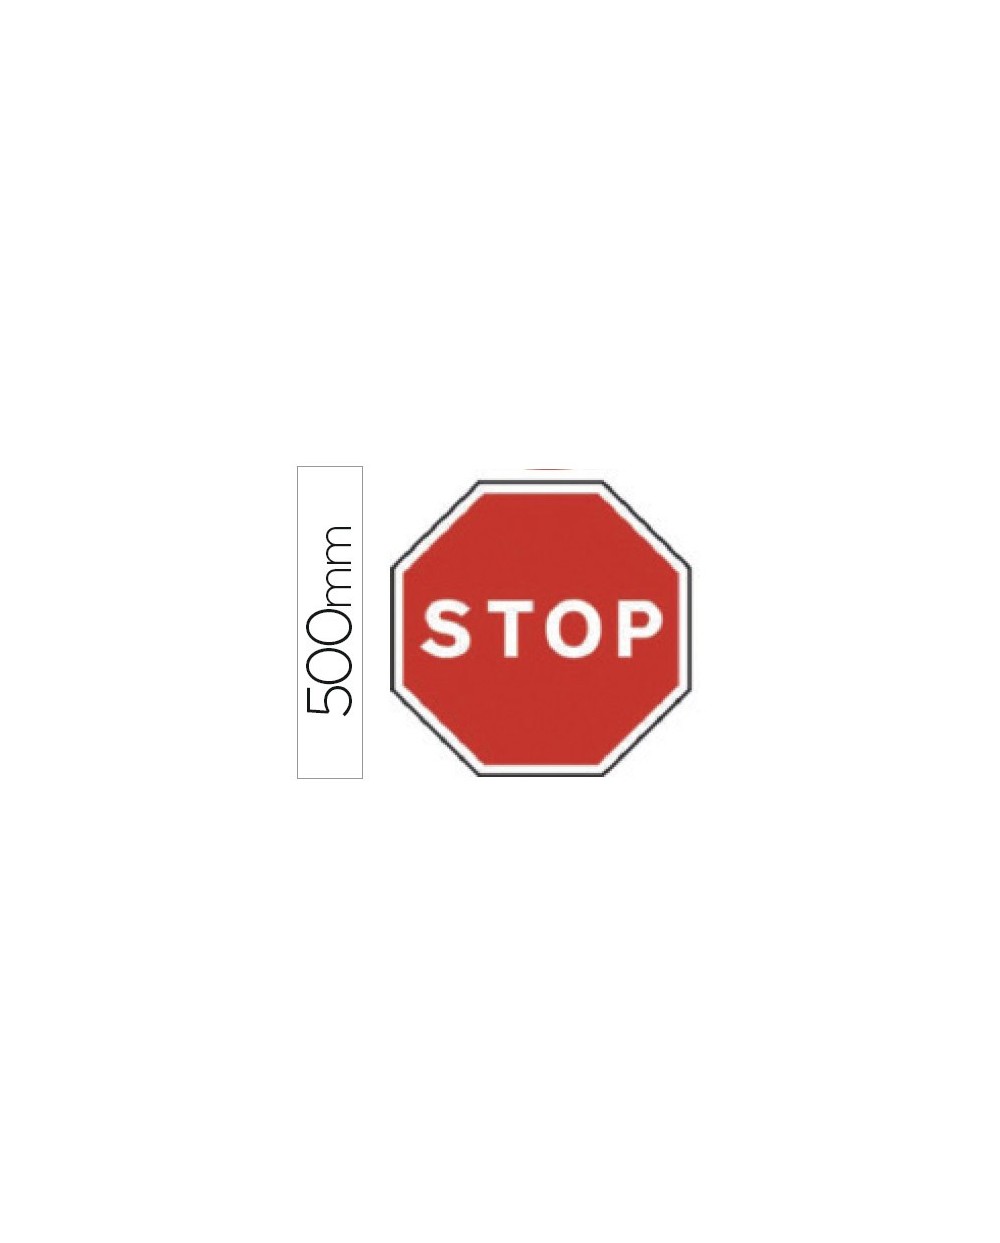 Pictograma syssa senal vial stop en acero galvanizado 500 mm